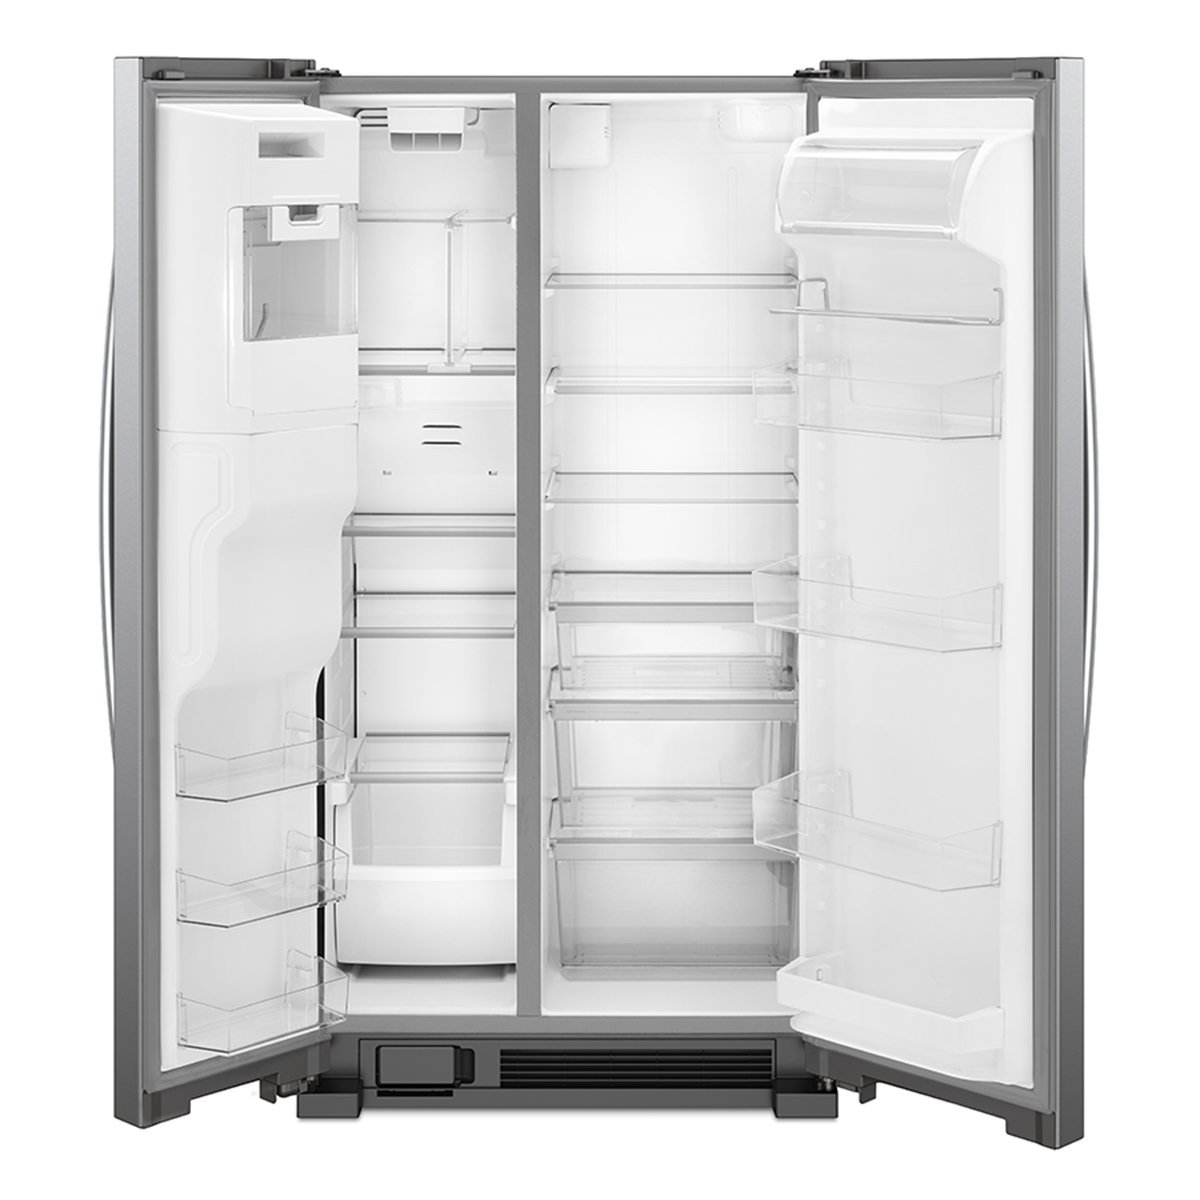 Refrigerador Whirlpool Duplex 25P3 Acero